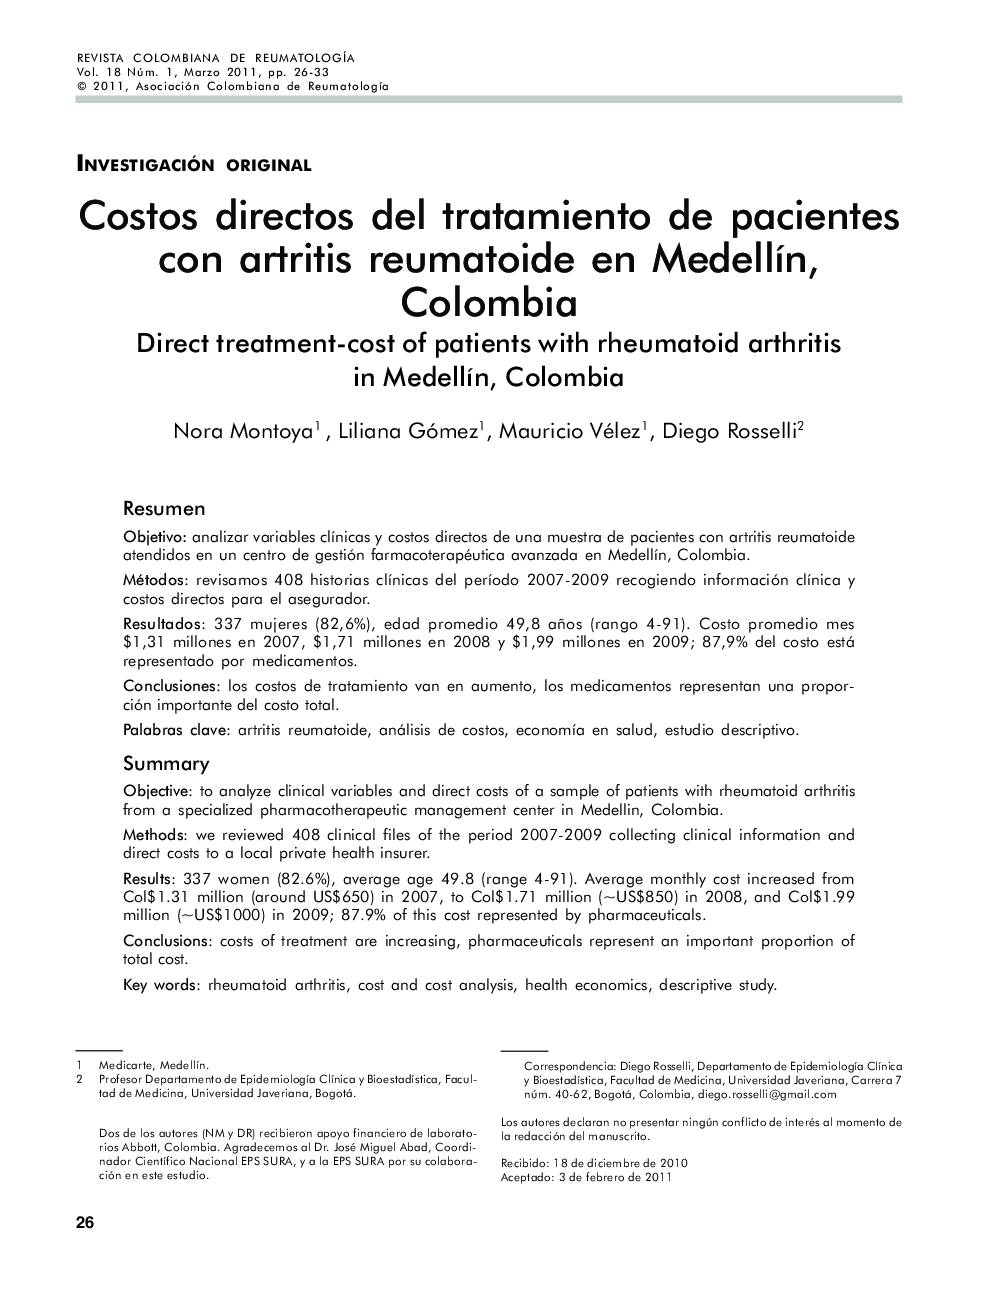 Costos directos del tratamiento de pacientes con artritis reumatoide en MedellÃ­n, Colombia